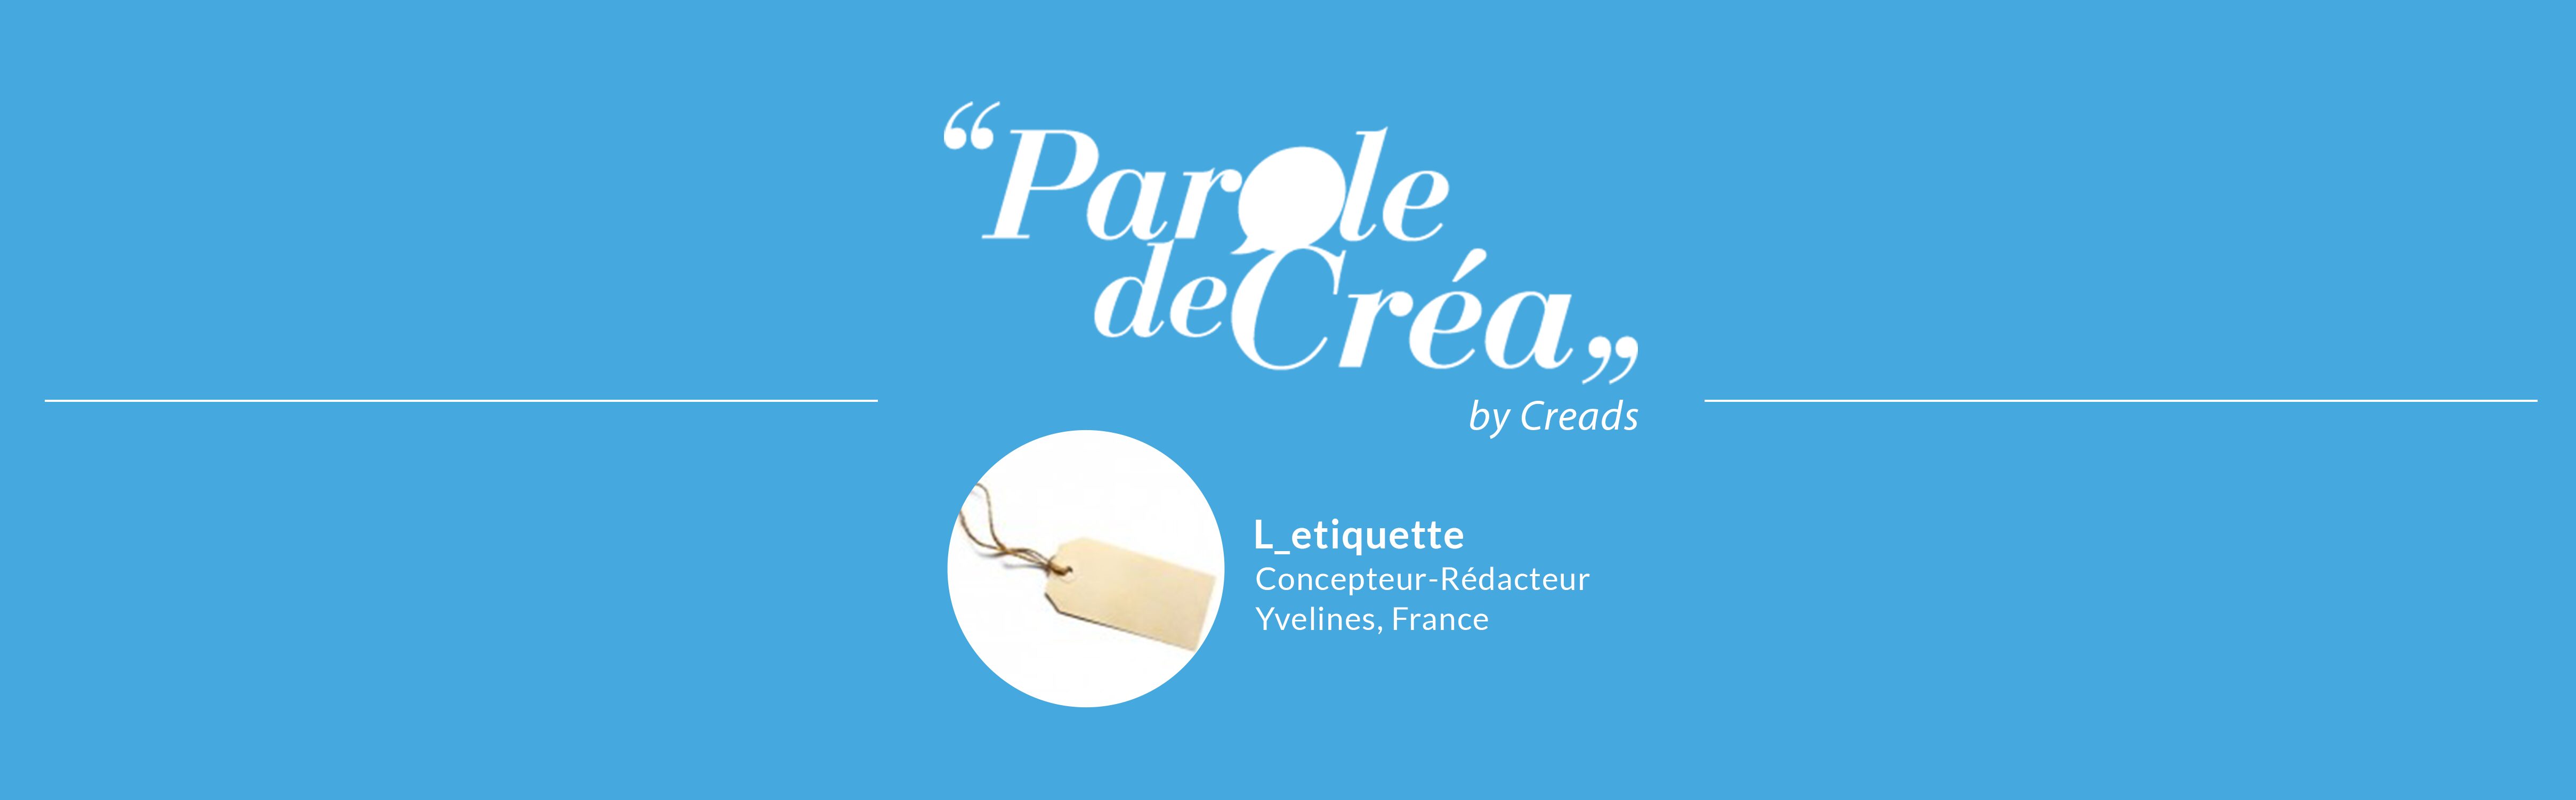 Paroles de Créa : L&#039;interview de L_etiquette